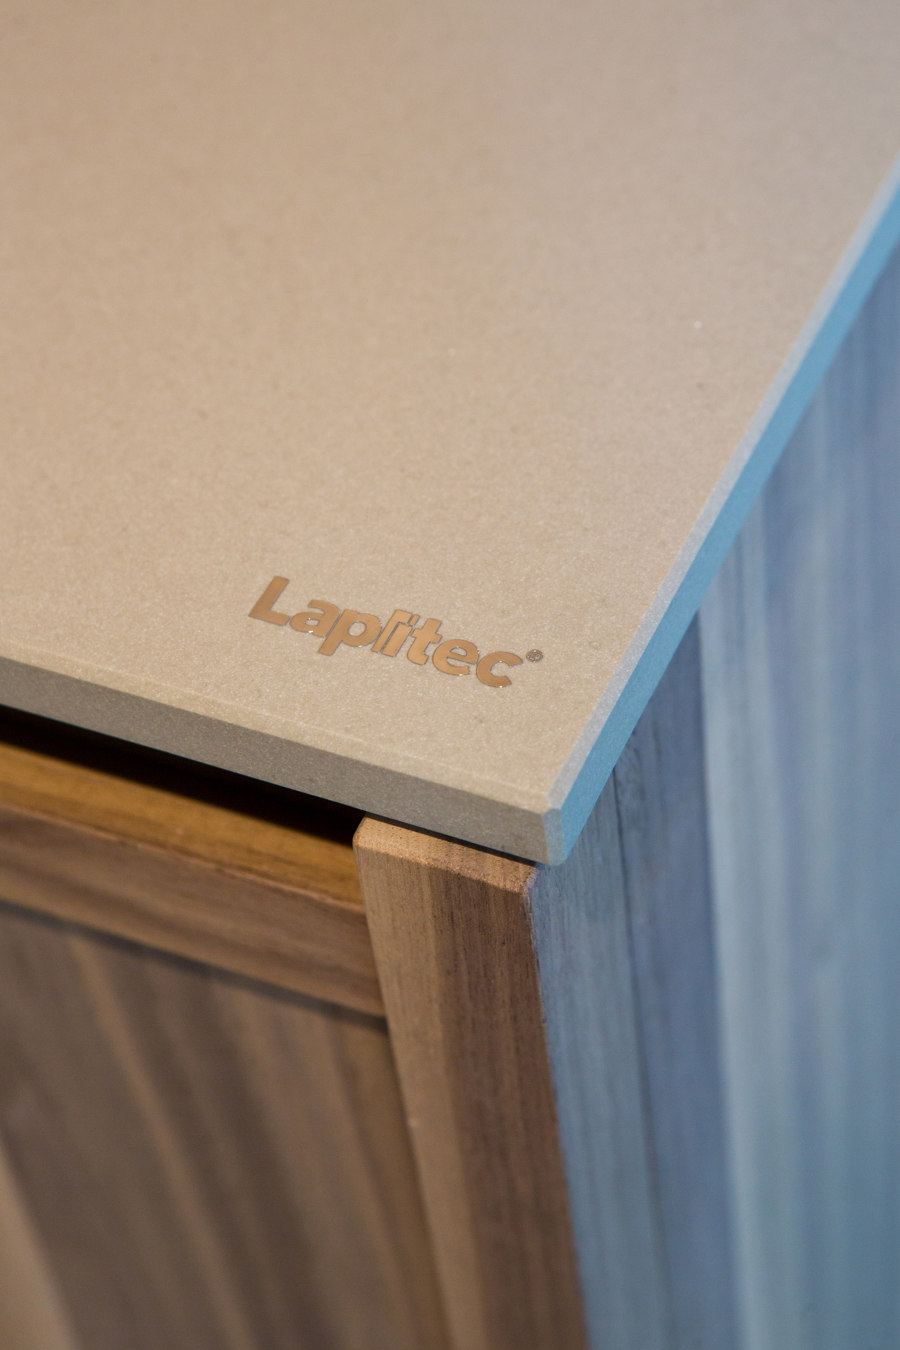 NO.MADE - LUXURY MOBILE HOME de Lapitec | Referencias de fabricantes